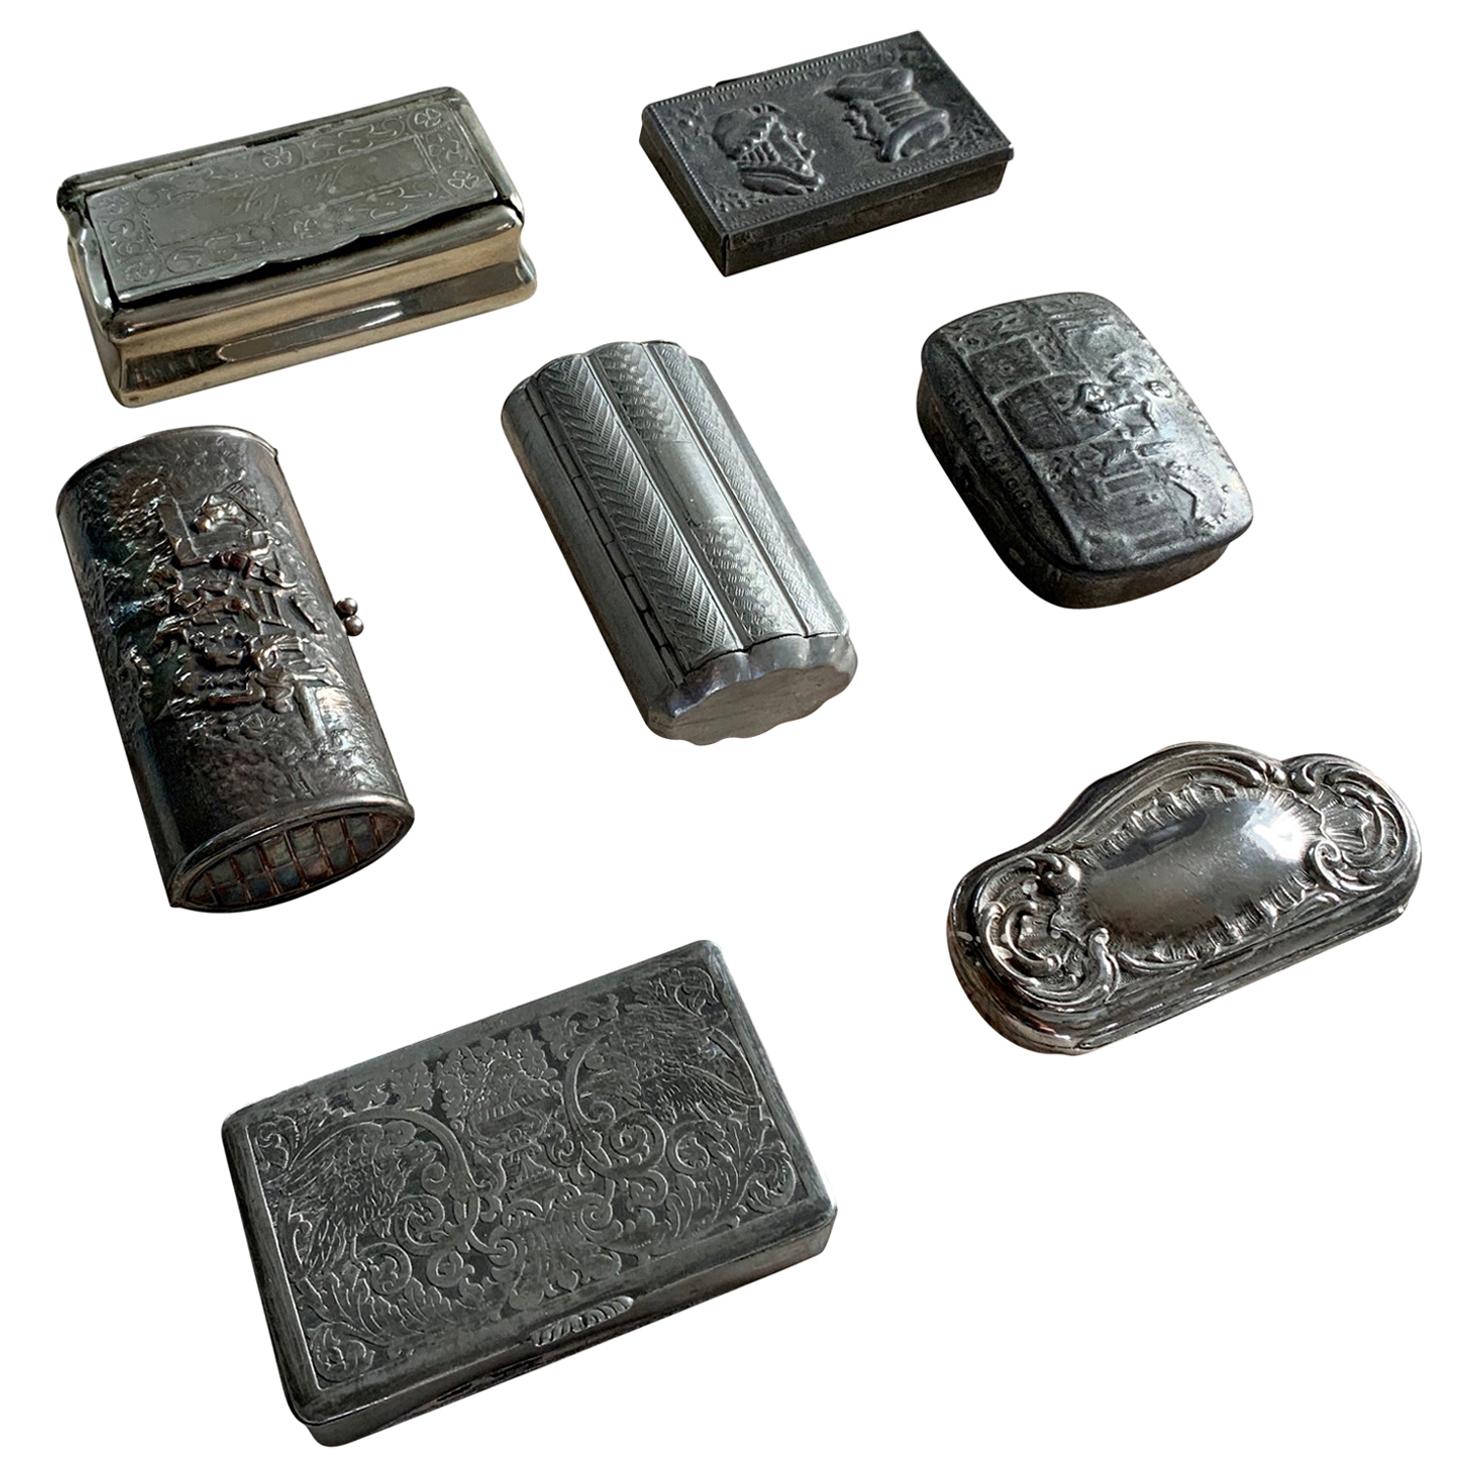 Europäische Sammlung von 7 antiken Schnupftabakdosen aus dem 19. Jahrhundert